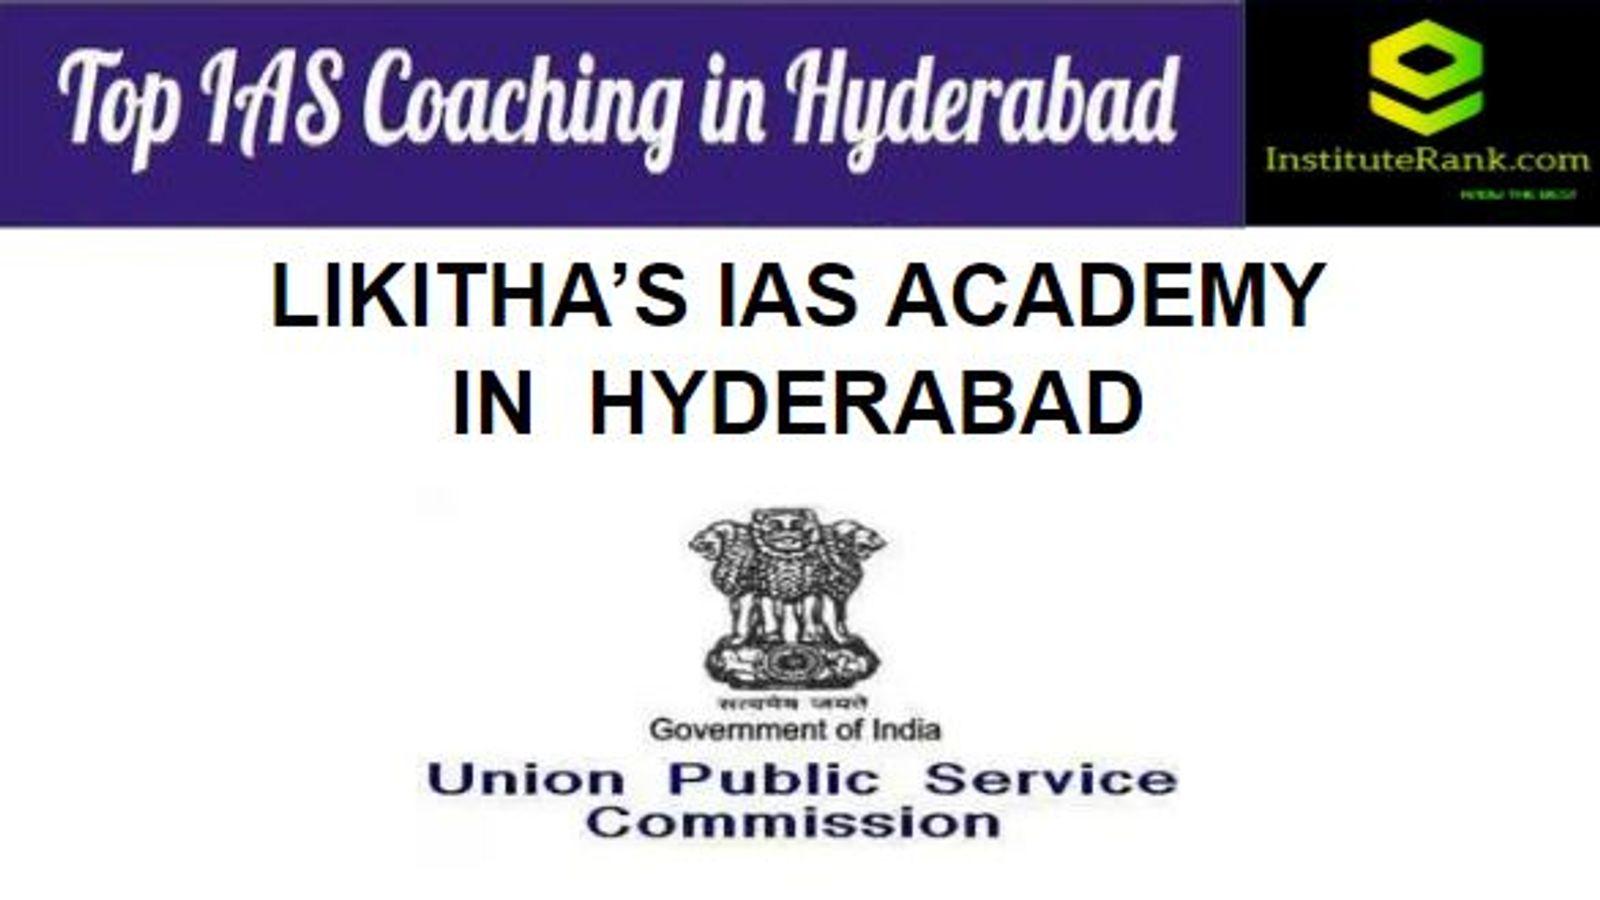 Likitha's IAS Academy